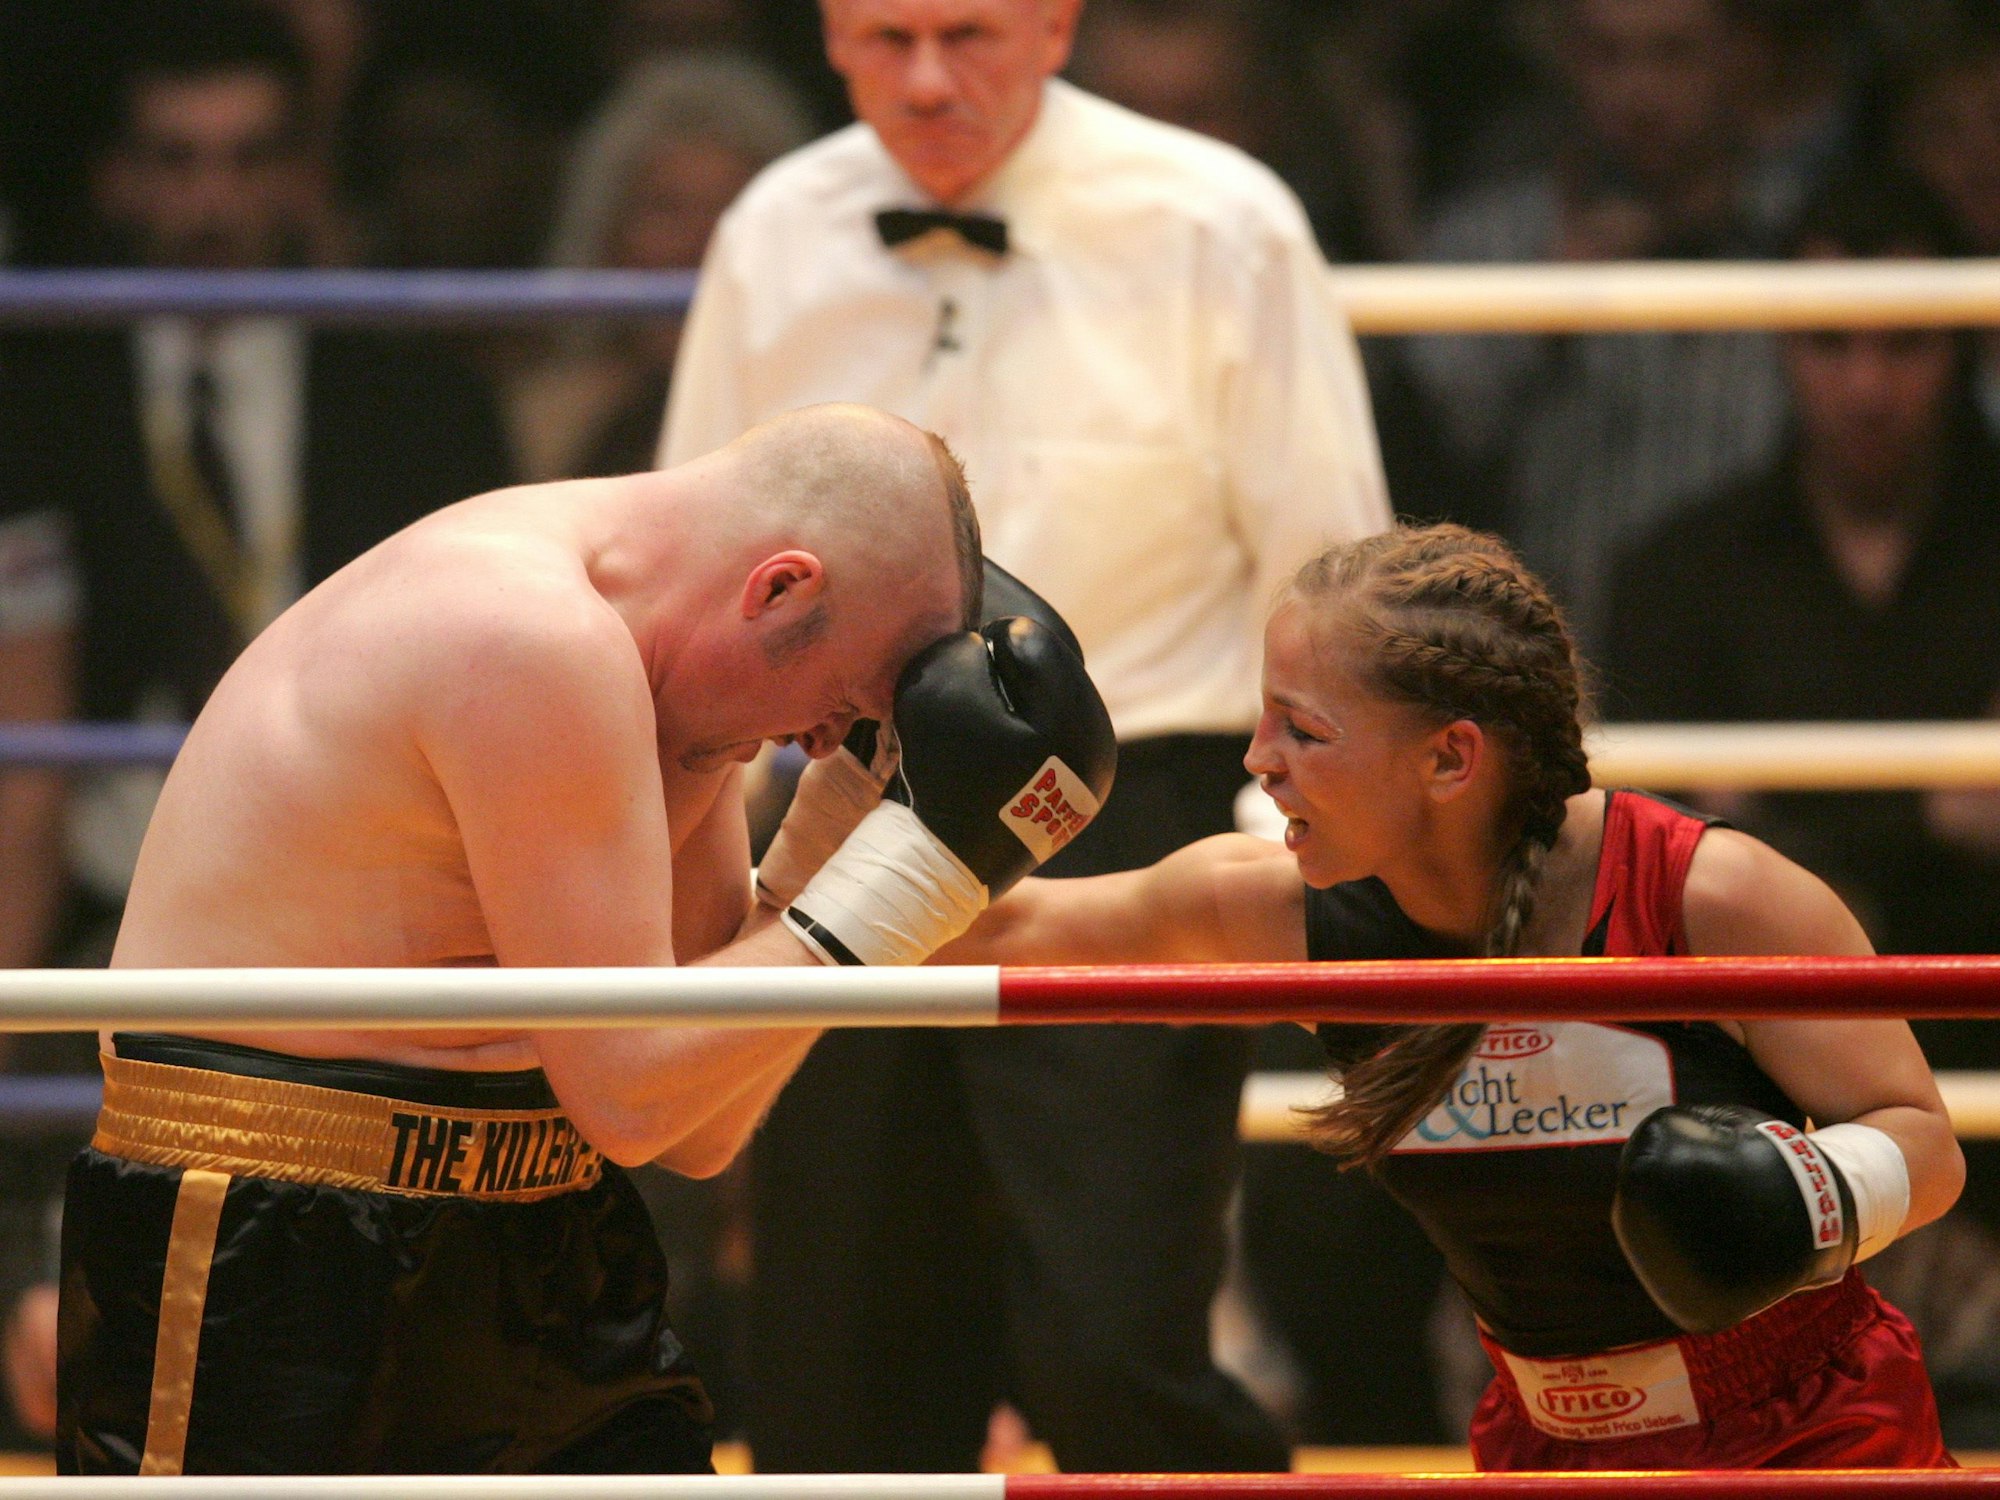 Boxweltmeisterin Regina Halmich (l) und Fernsehmoderator Stefan Raab boxen am Freitag (30.03.2007) in der ausverkauften Kölnarena in Köln gegeneinander. Halmich gewann nach Punkten.